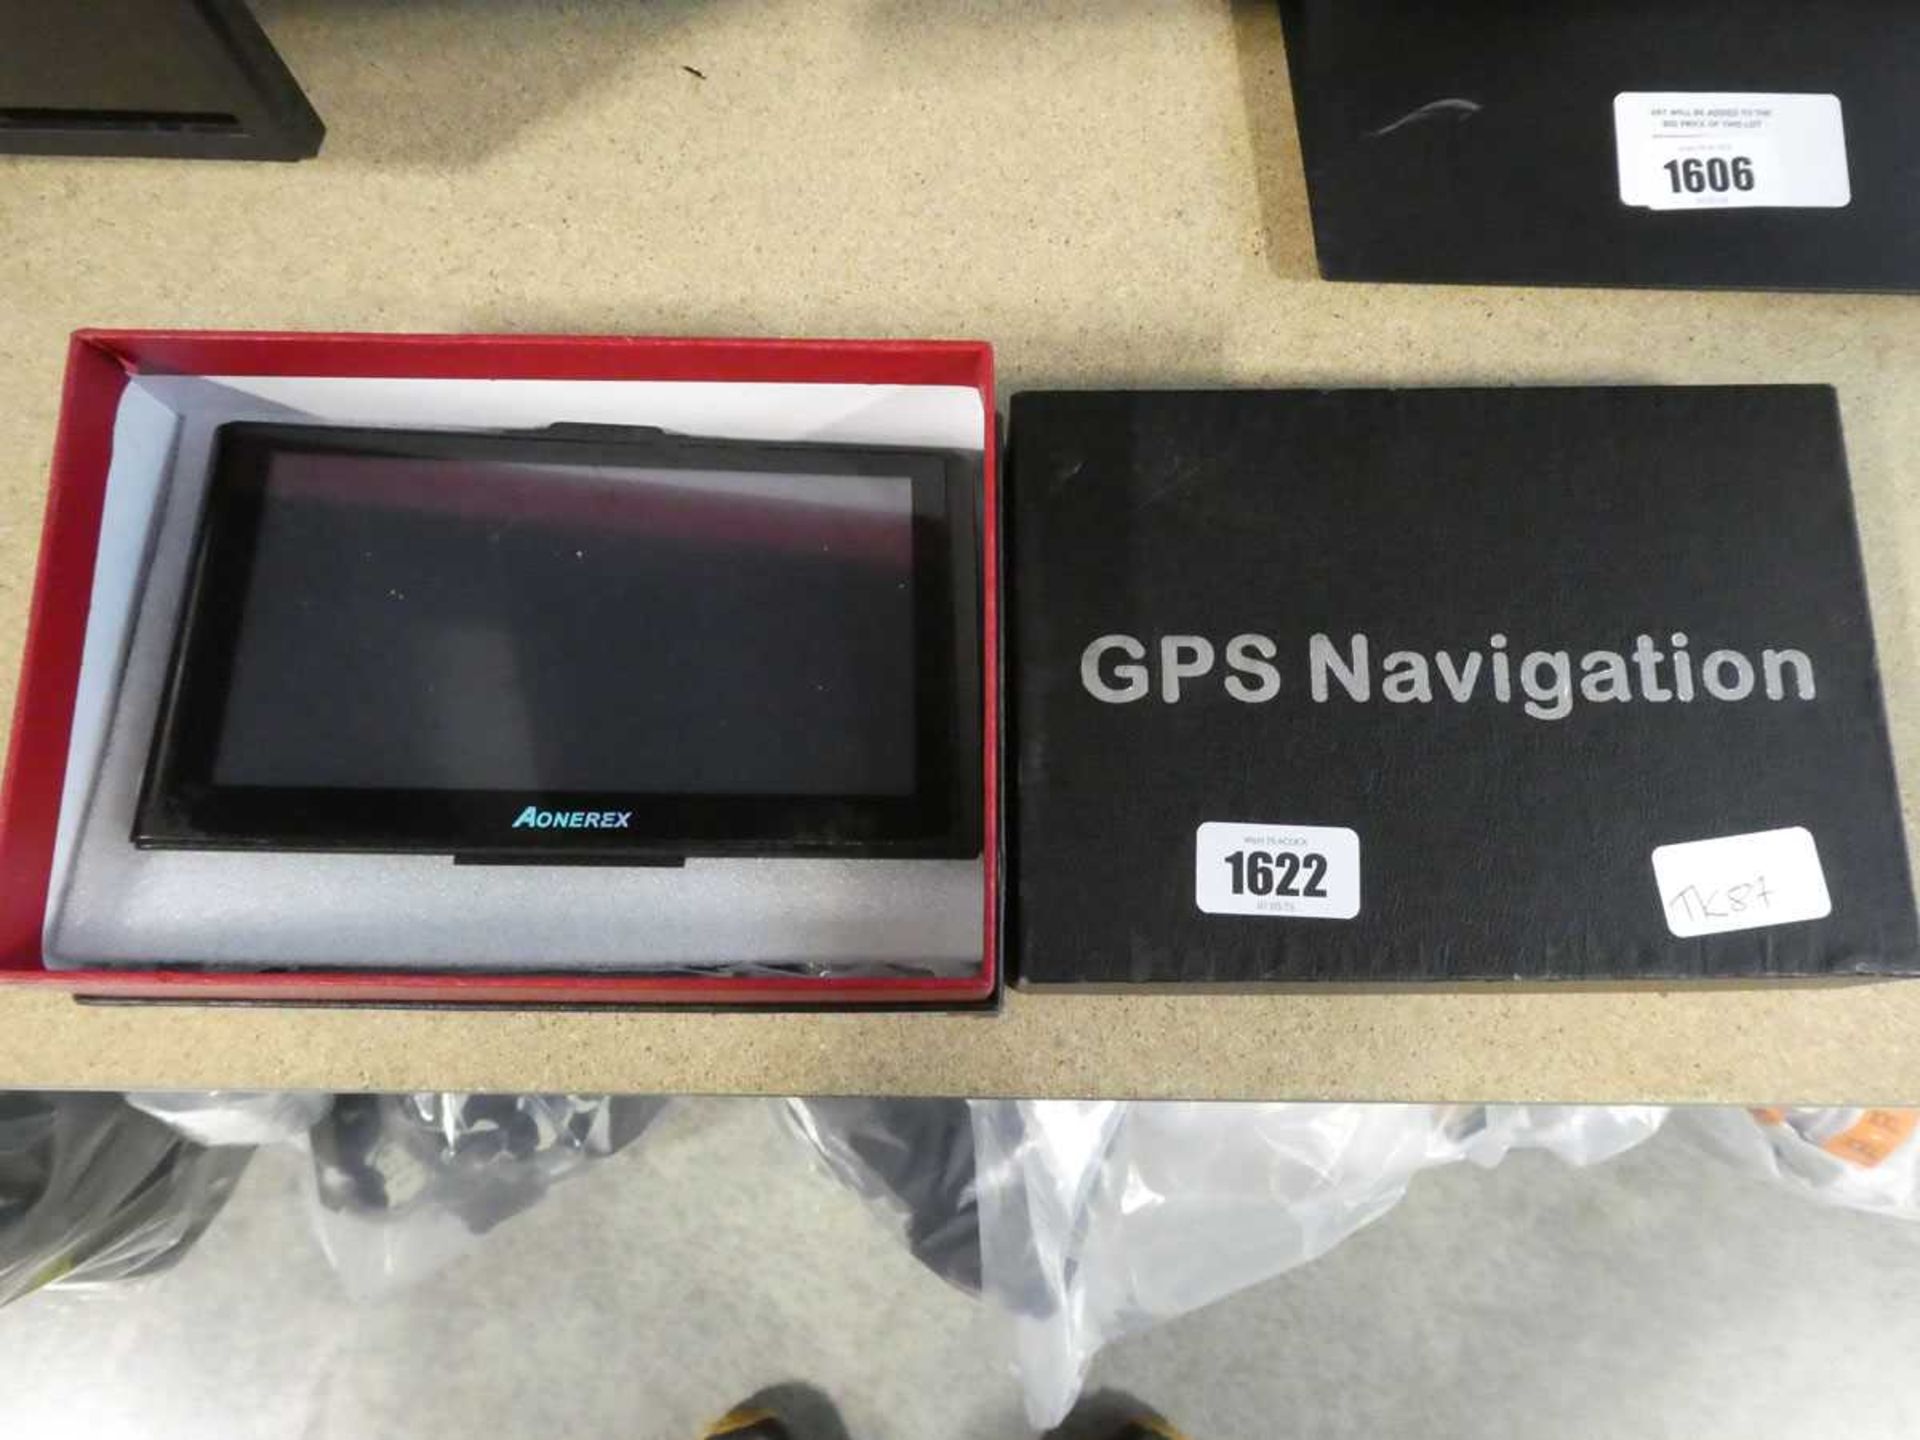 GPS navigation system by Aonerex